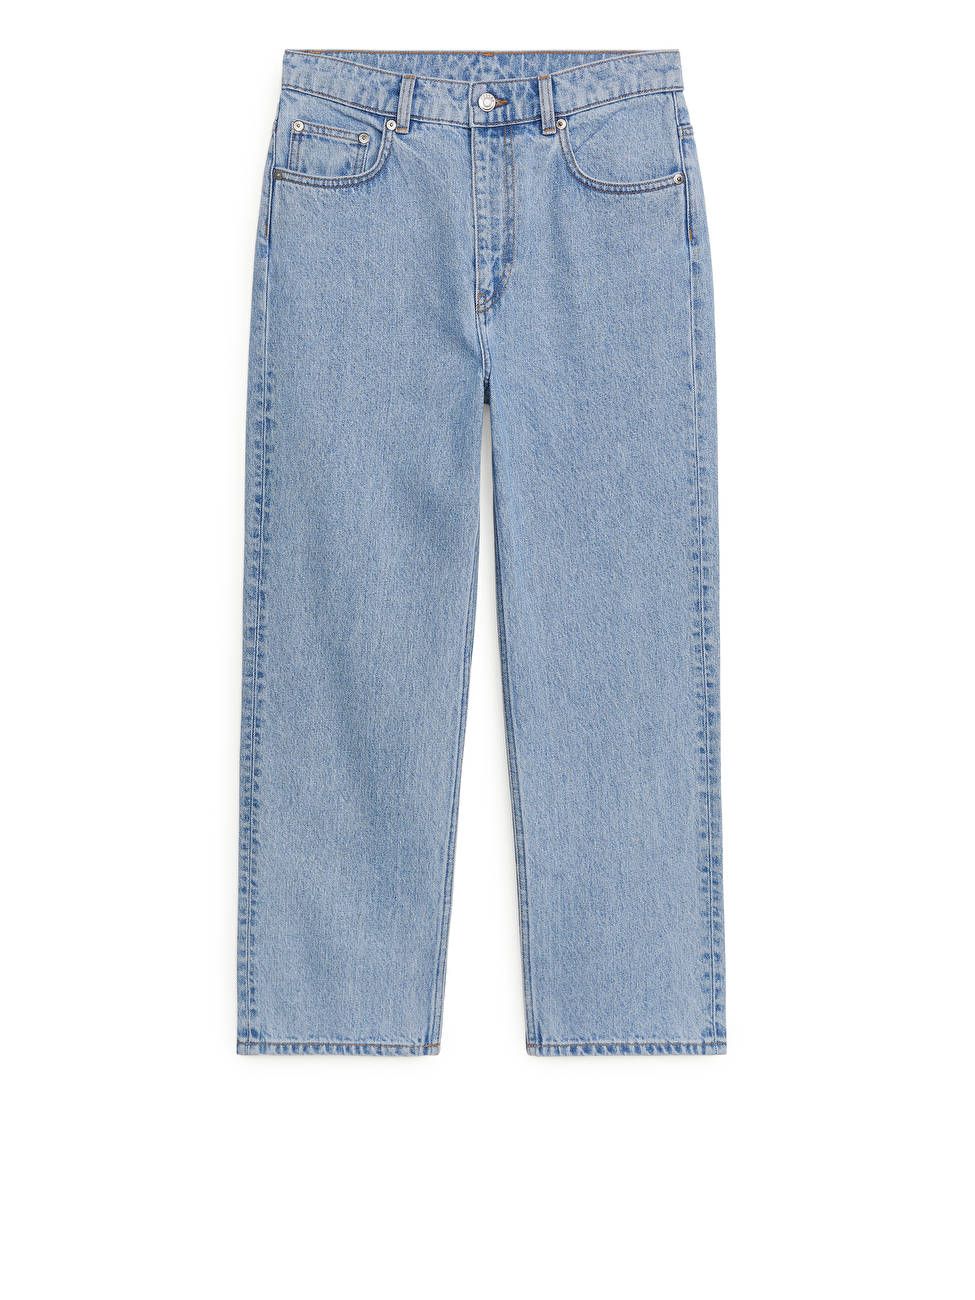 GERADE, kurz geschnittene Jeans | ARKET (DE)